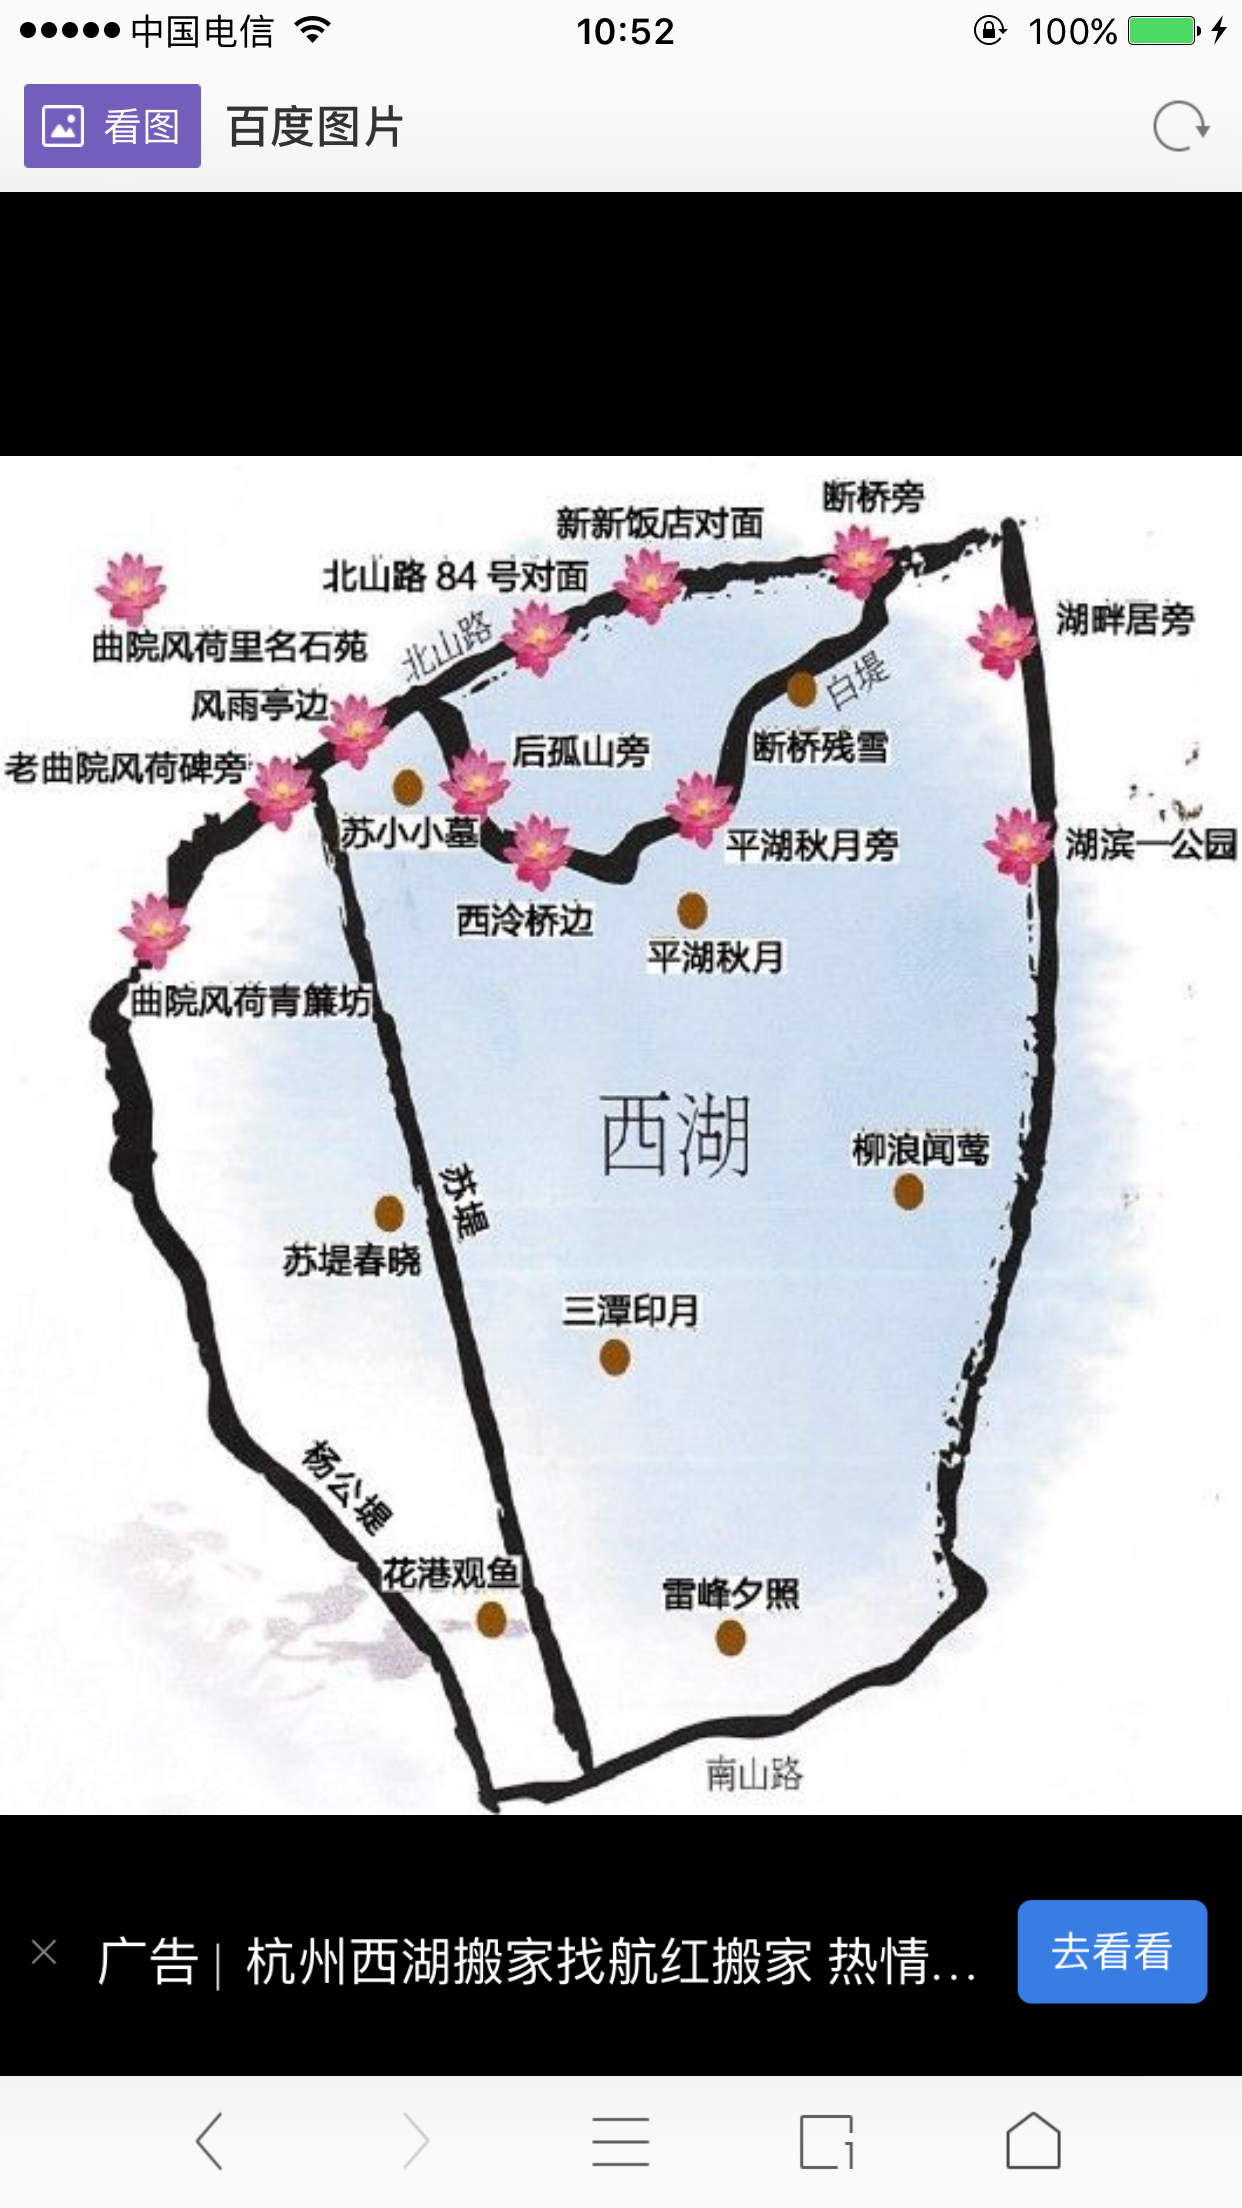 杭州西湖游玩路线图图片